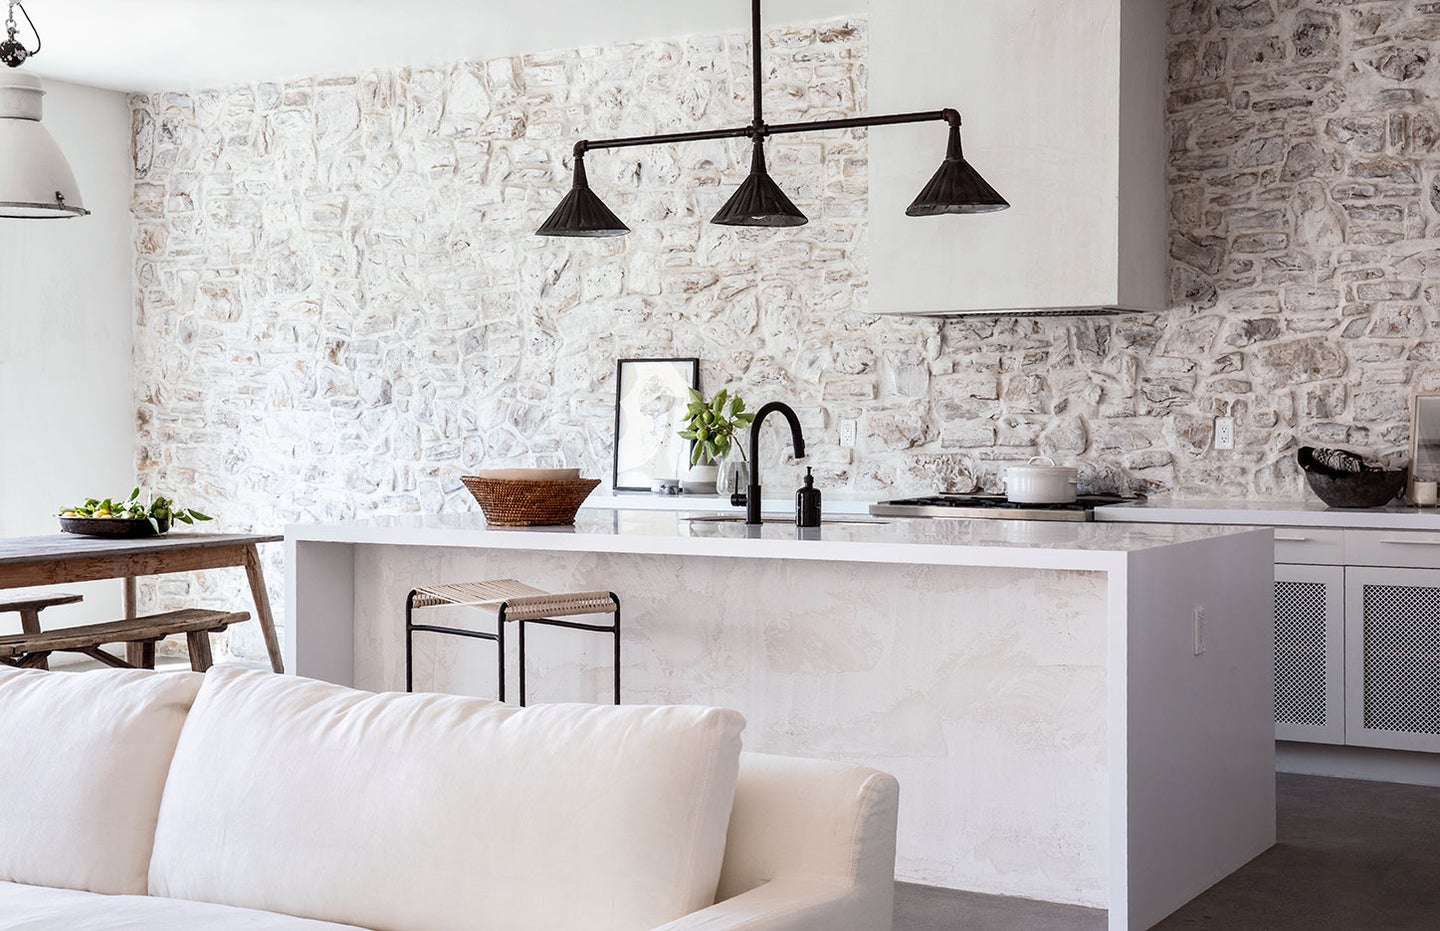 white kitchen with stone walls